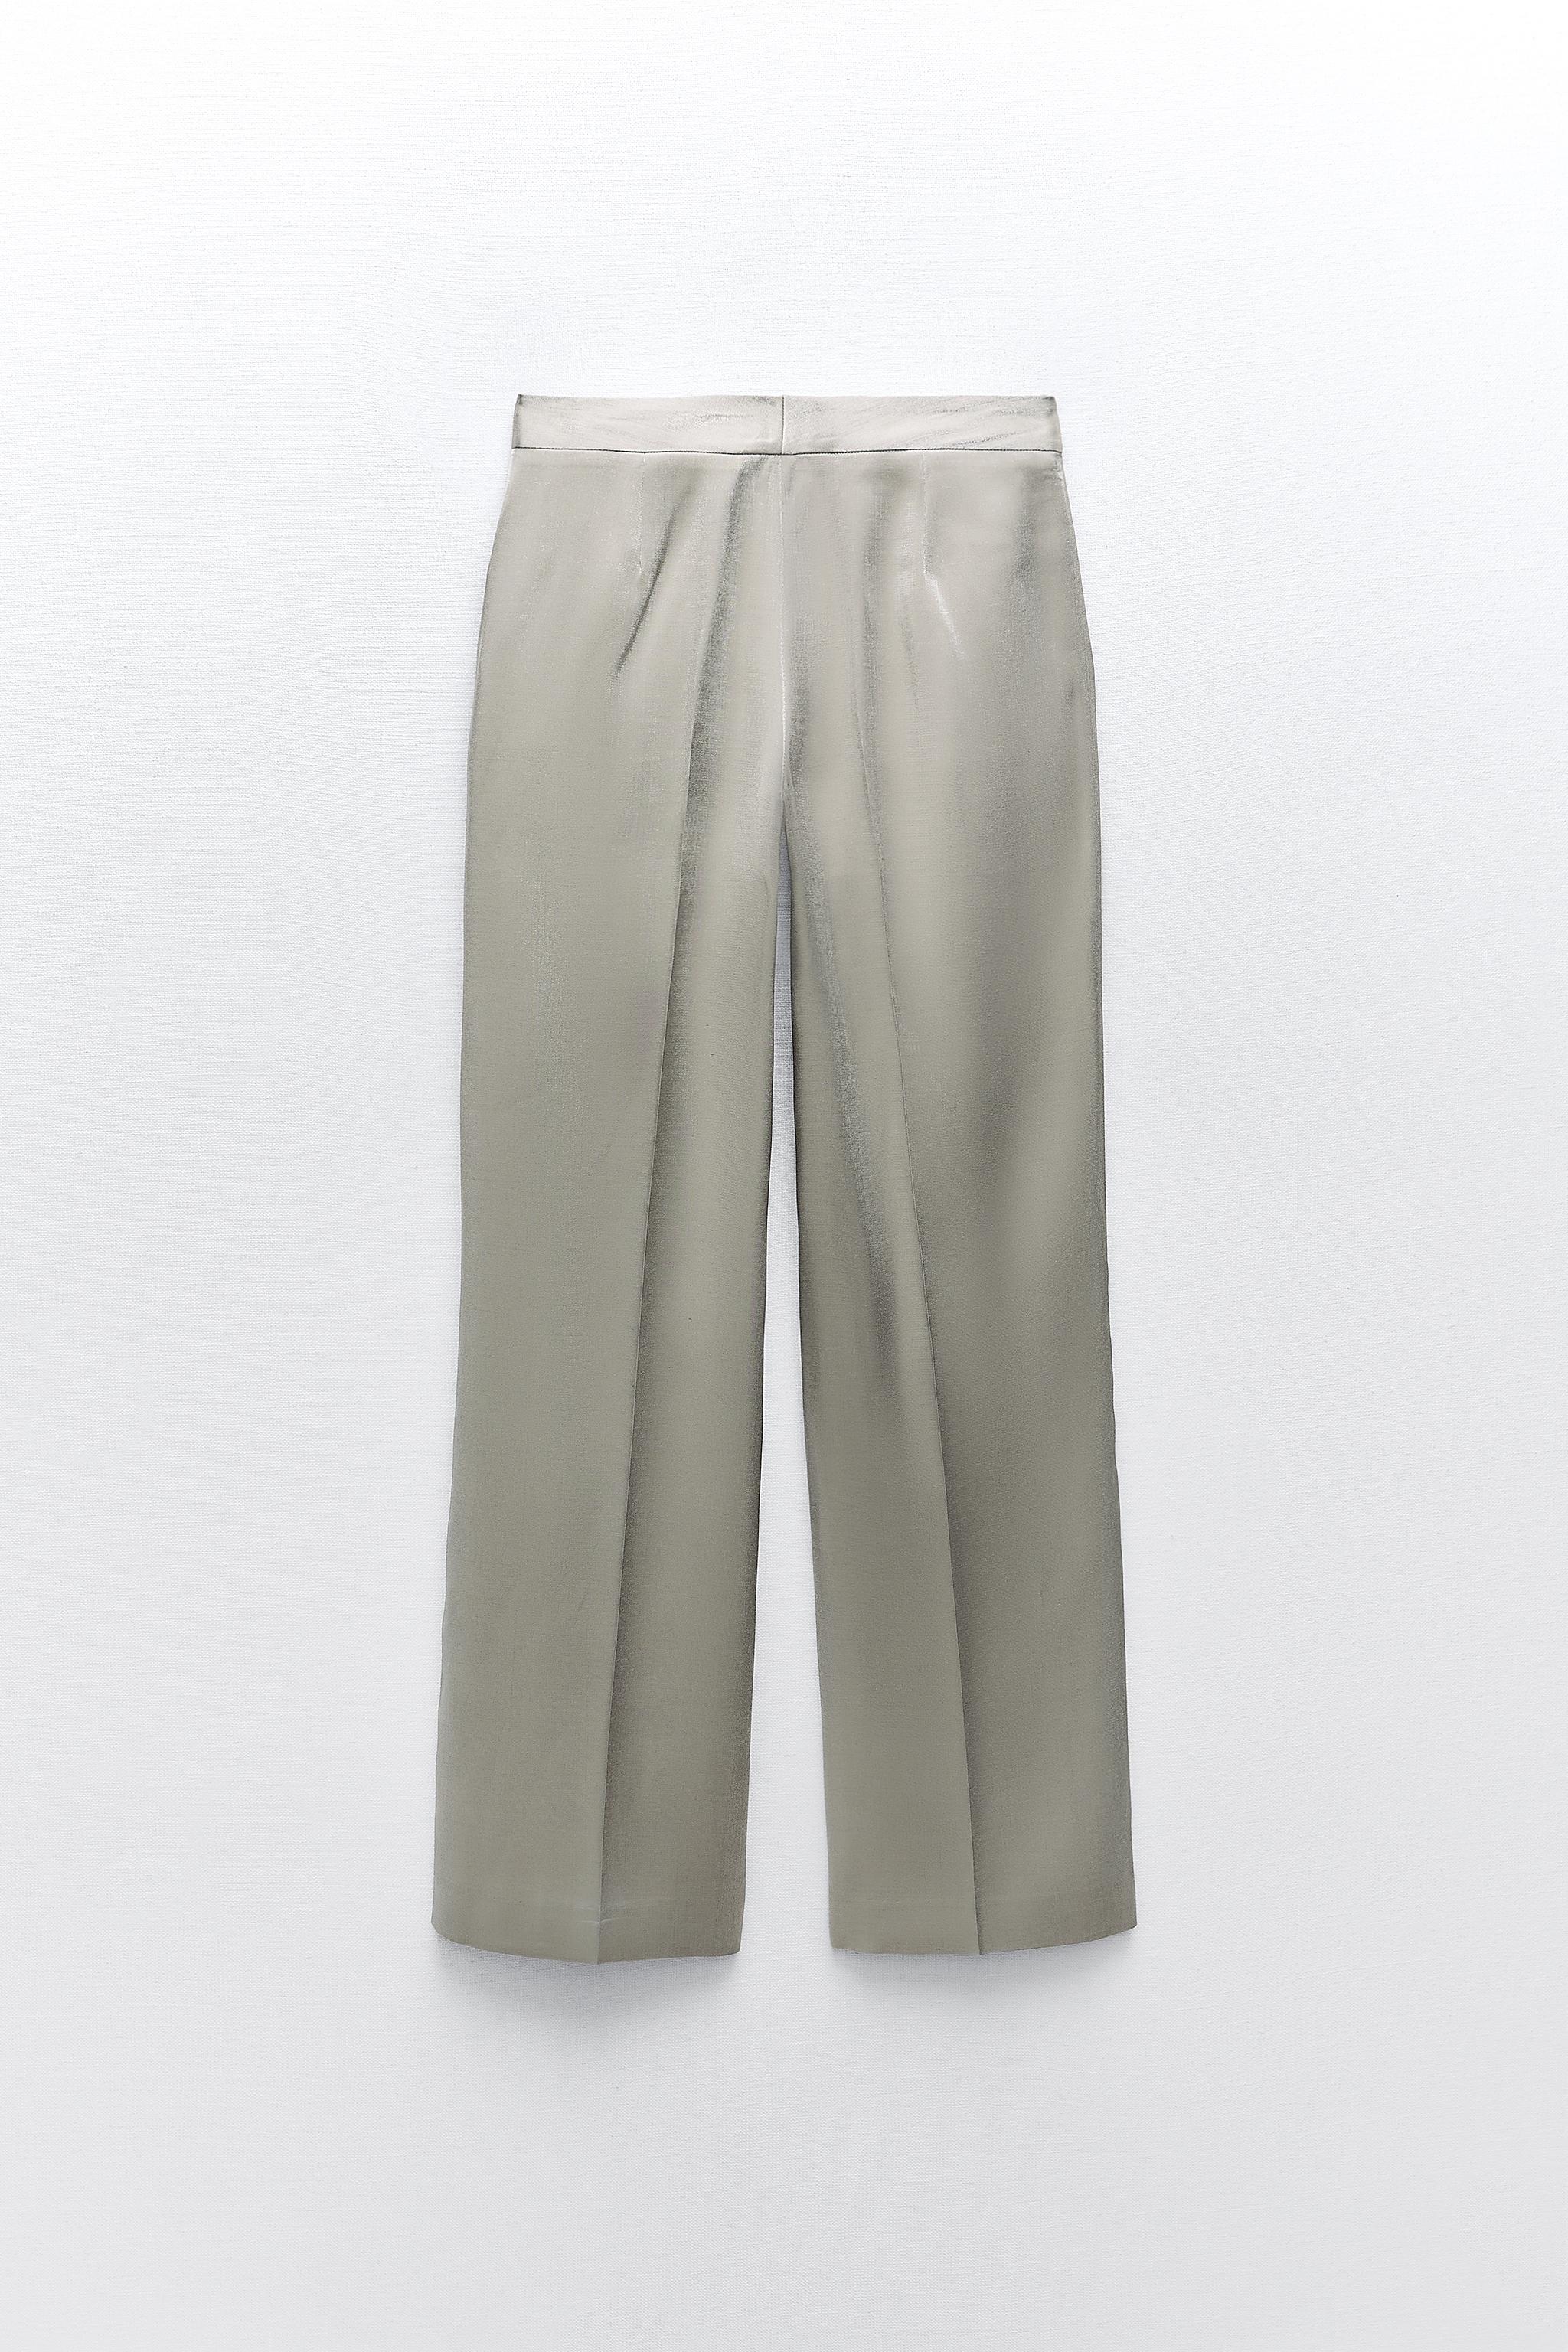 10 pantalones metalizados de Zara para Navidad: holgaditos, elegantes y muy  versátiles